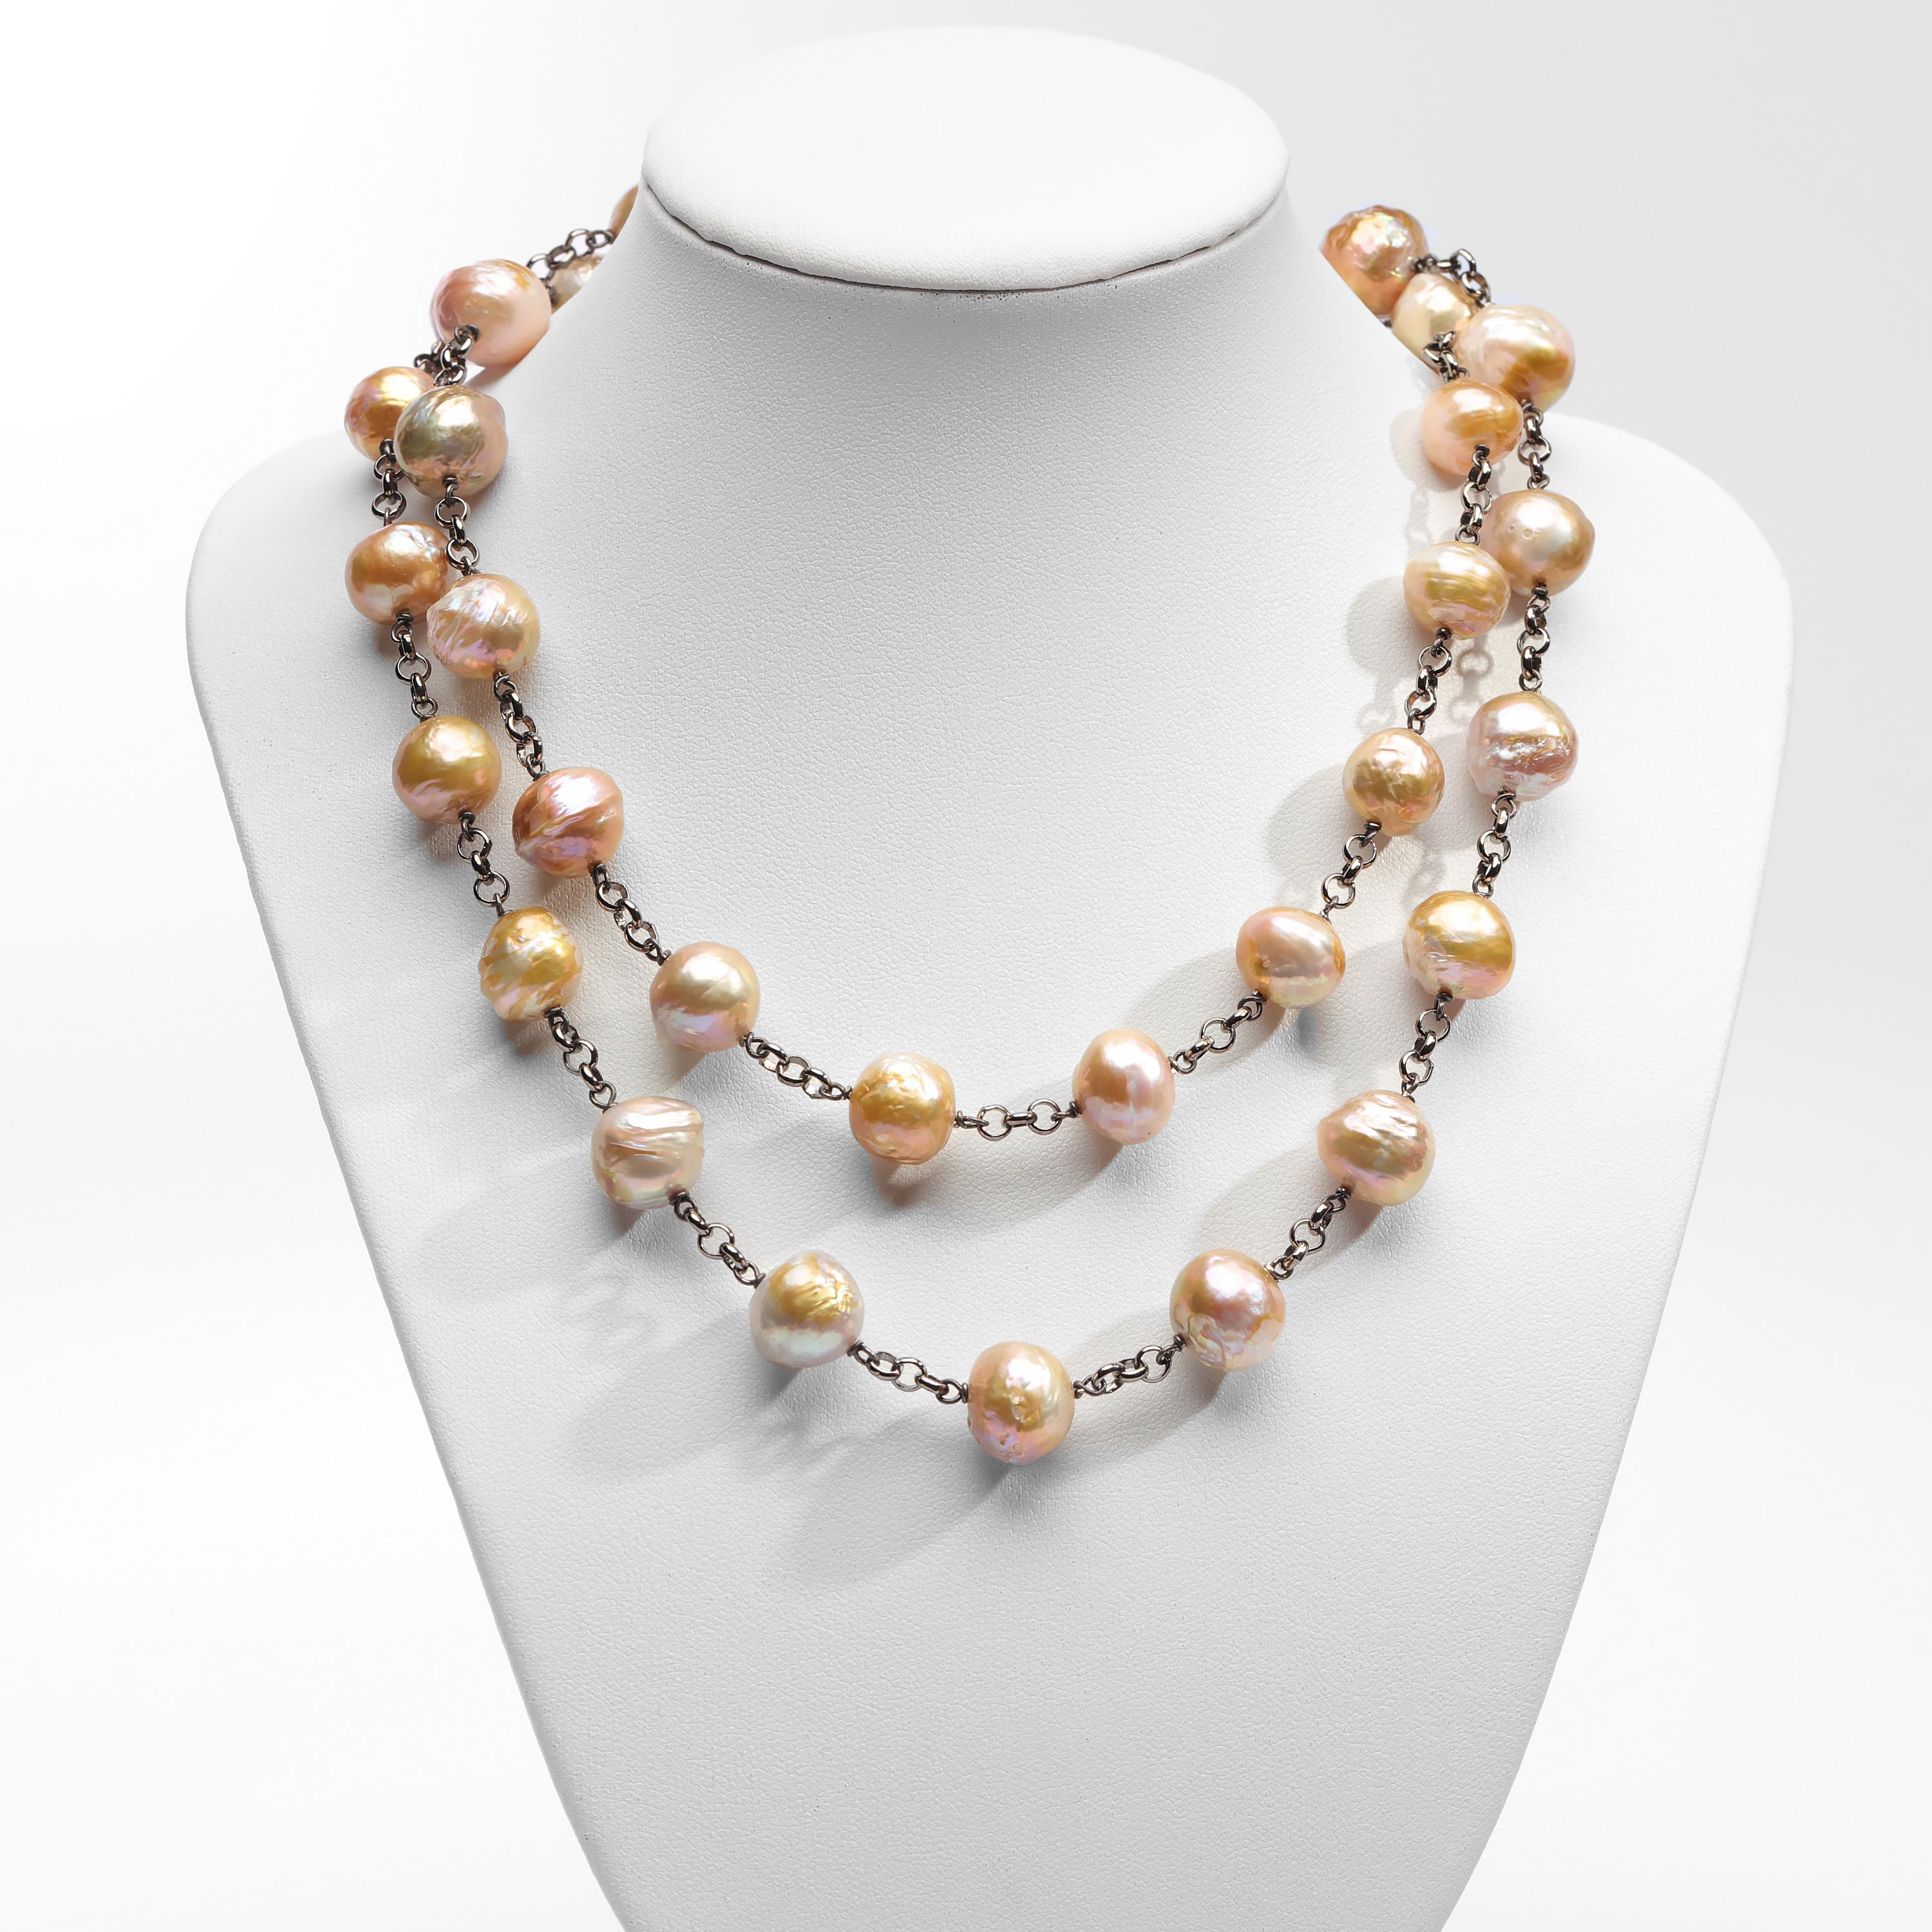 Ce collier unique et saisissant est composé de 35 perles d'eau douce de culture chinoise. Ces perles non teintées, de couleur naturelle, brillent des couleurs prismatiques de l'arc-en-ciel lorsque la lumière glisse sur leurs surfaces ondulées et